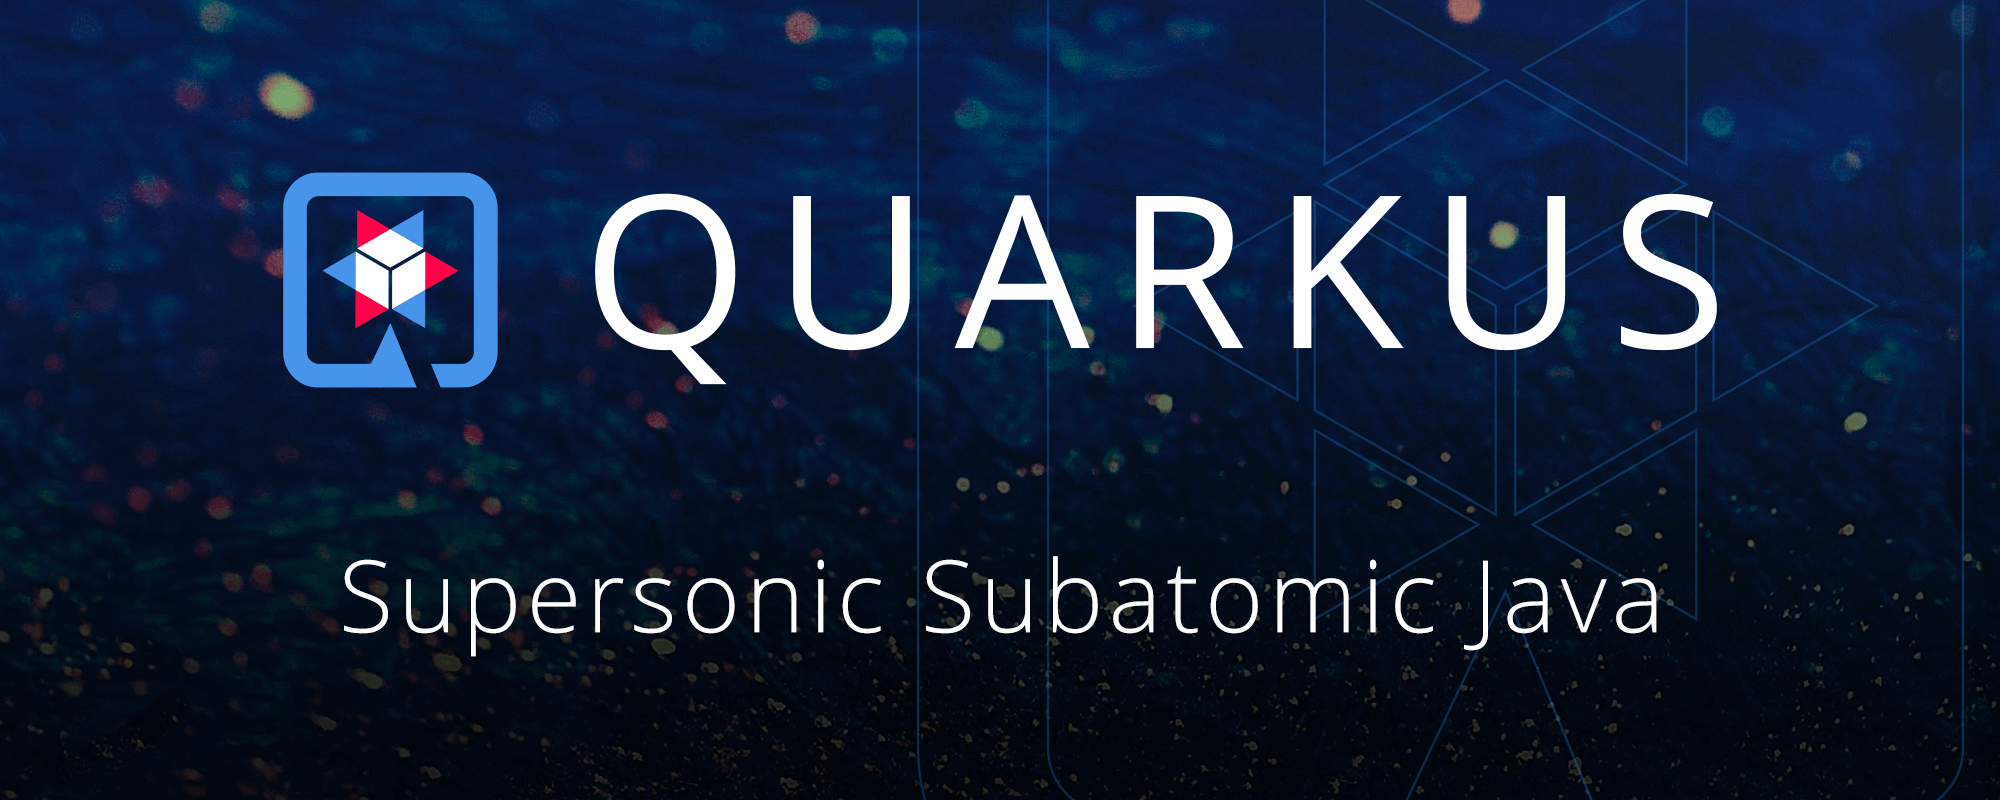 Quarkus - Super Subatomic Java